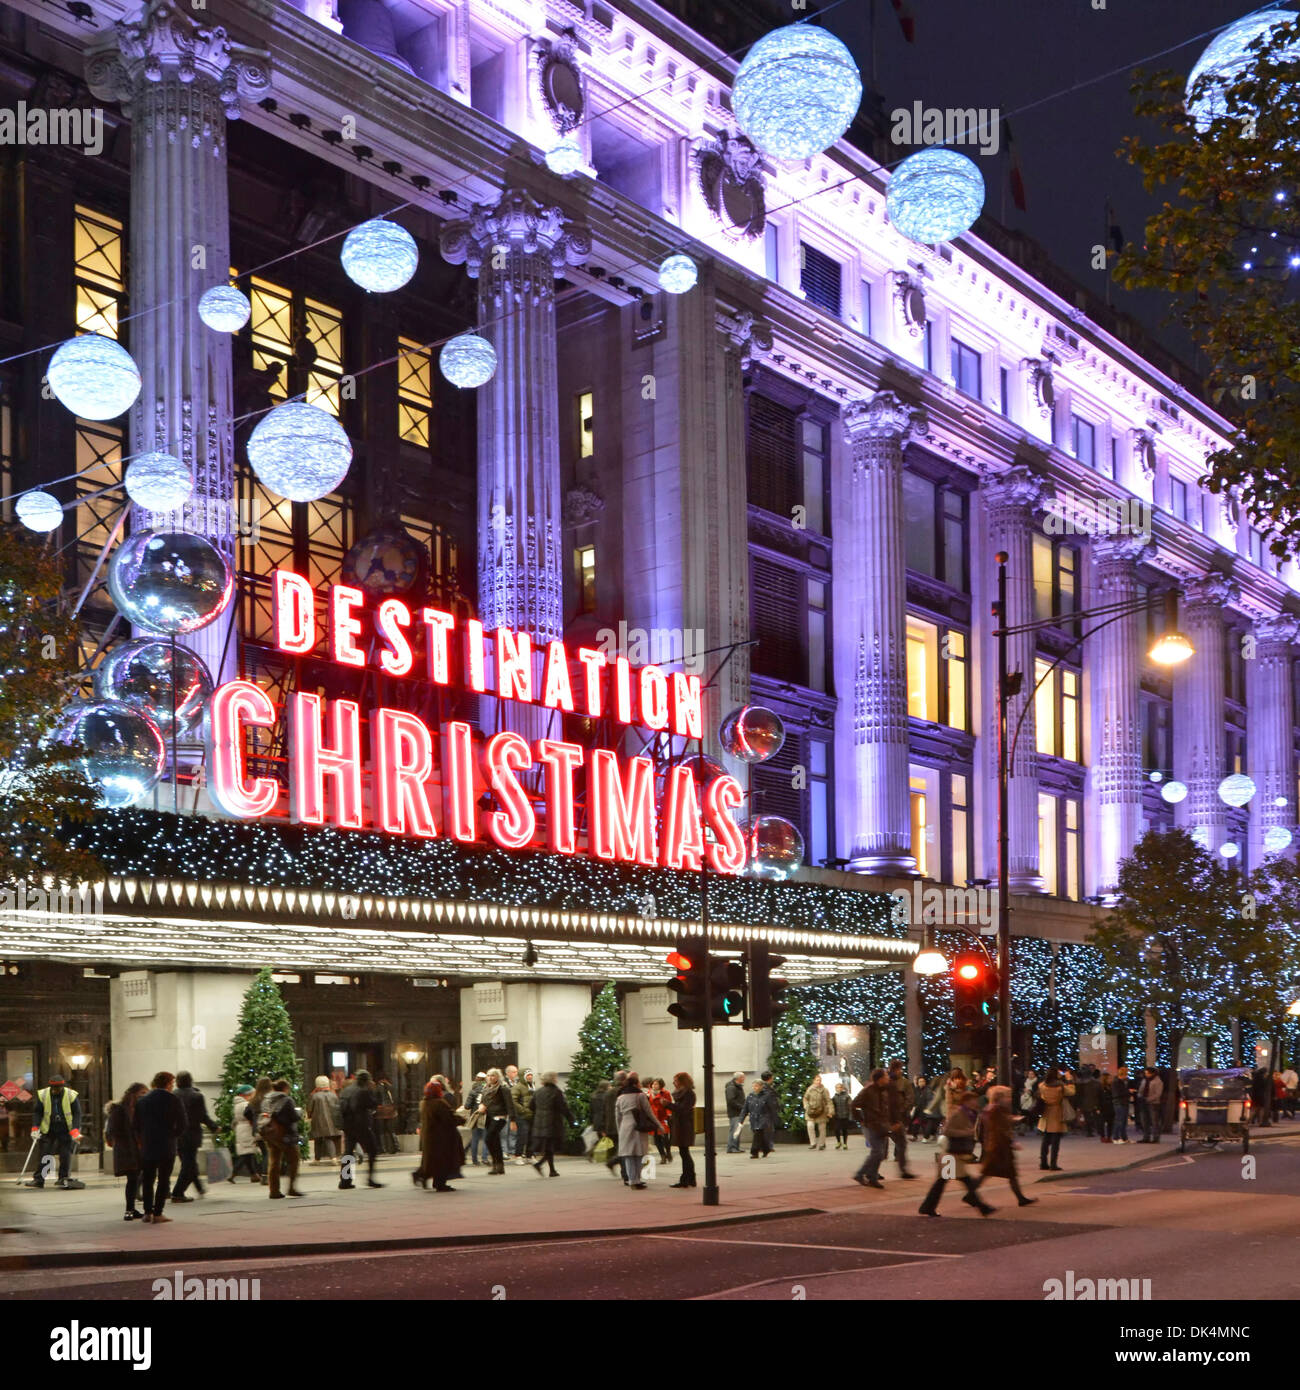 Les internautes et les illuminations de Noël et décorations à l'entrée principale du grand magasin Selfridges Oxford Street West End London England UK Banque D'Images